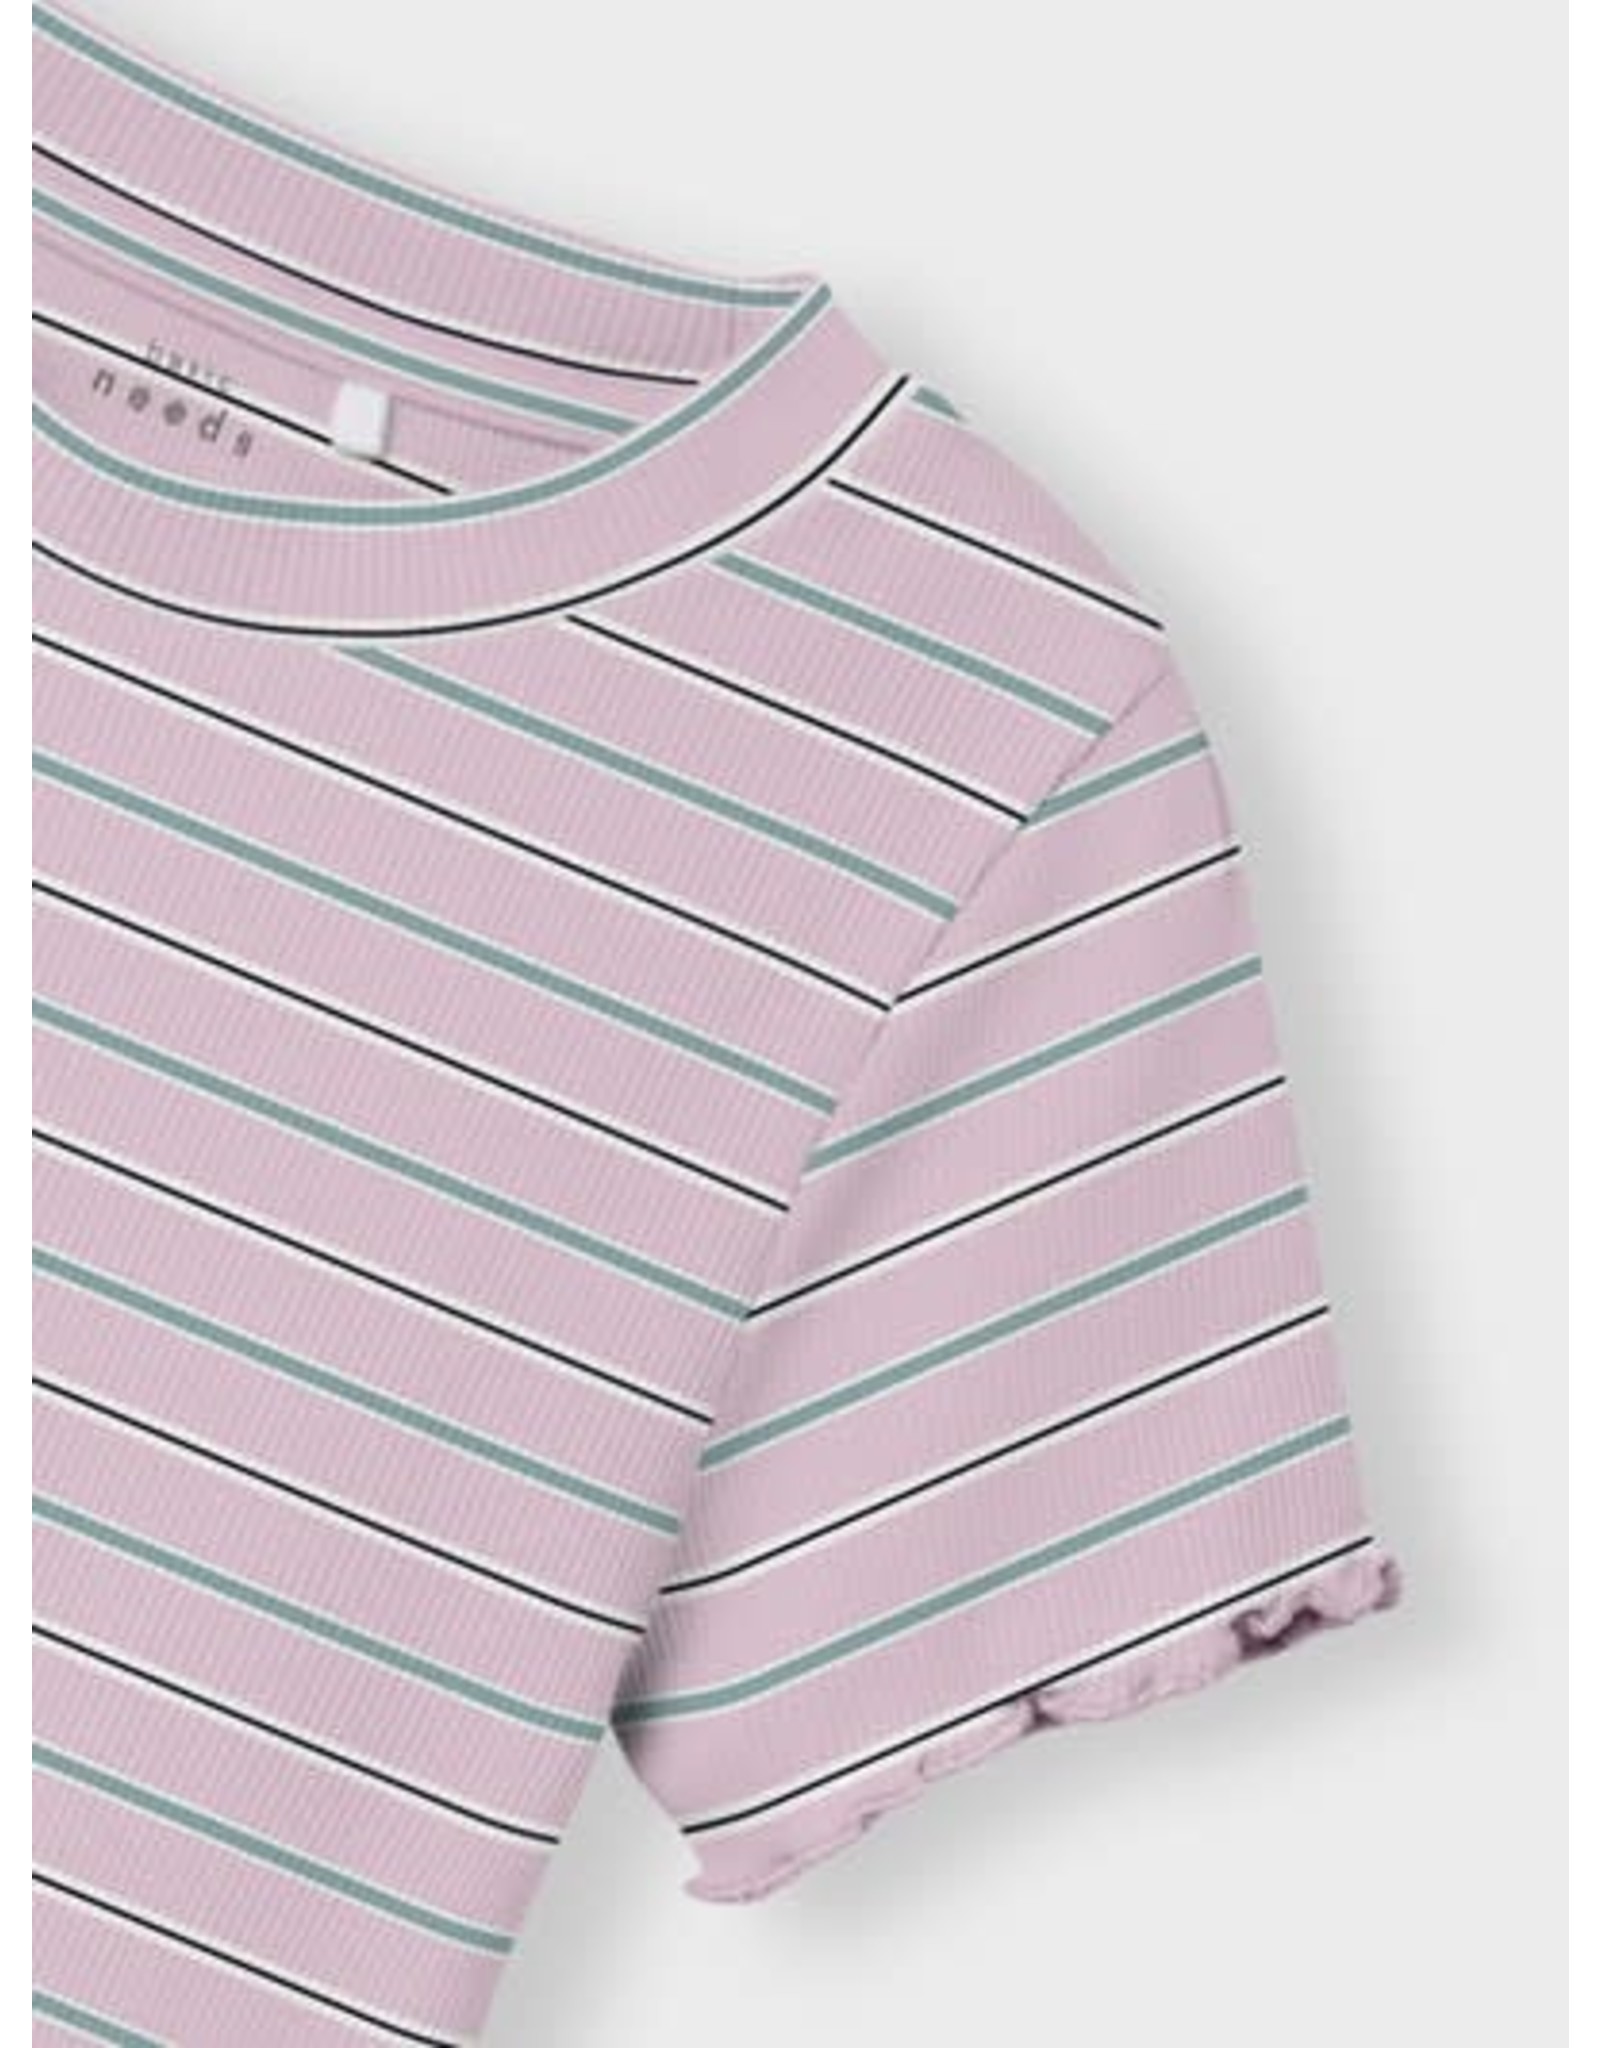 Lila paarse t-shirt met en streepjes van Name It | hejsan.be - Hejsan Hoppsan